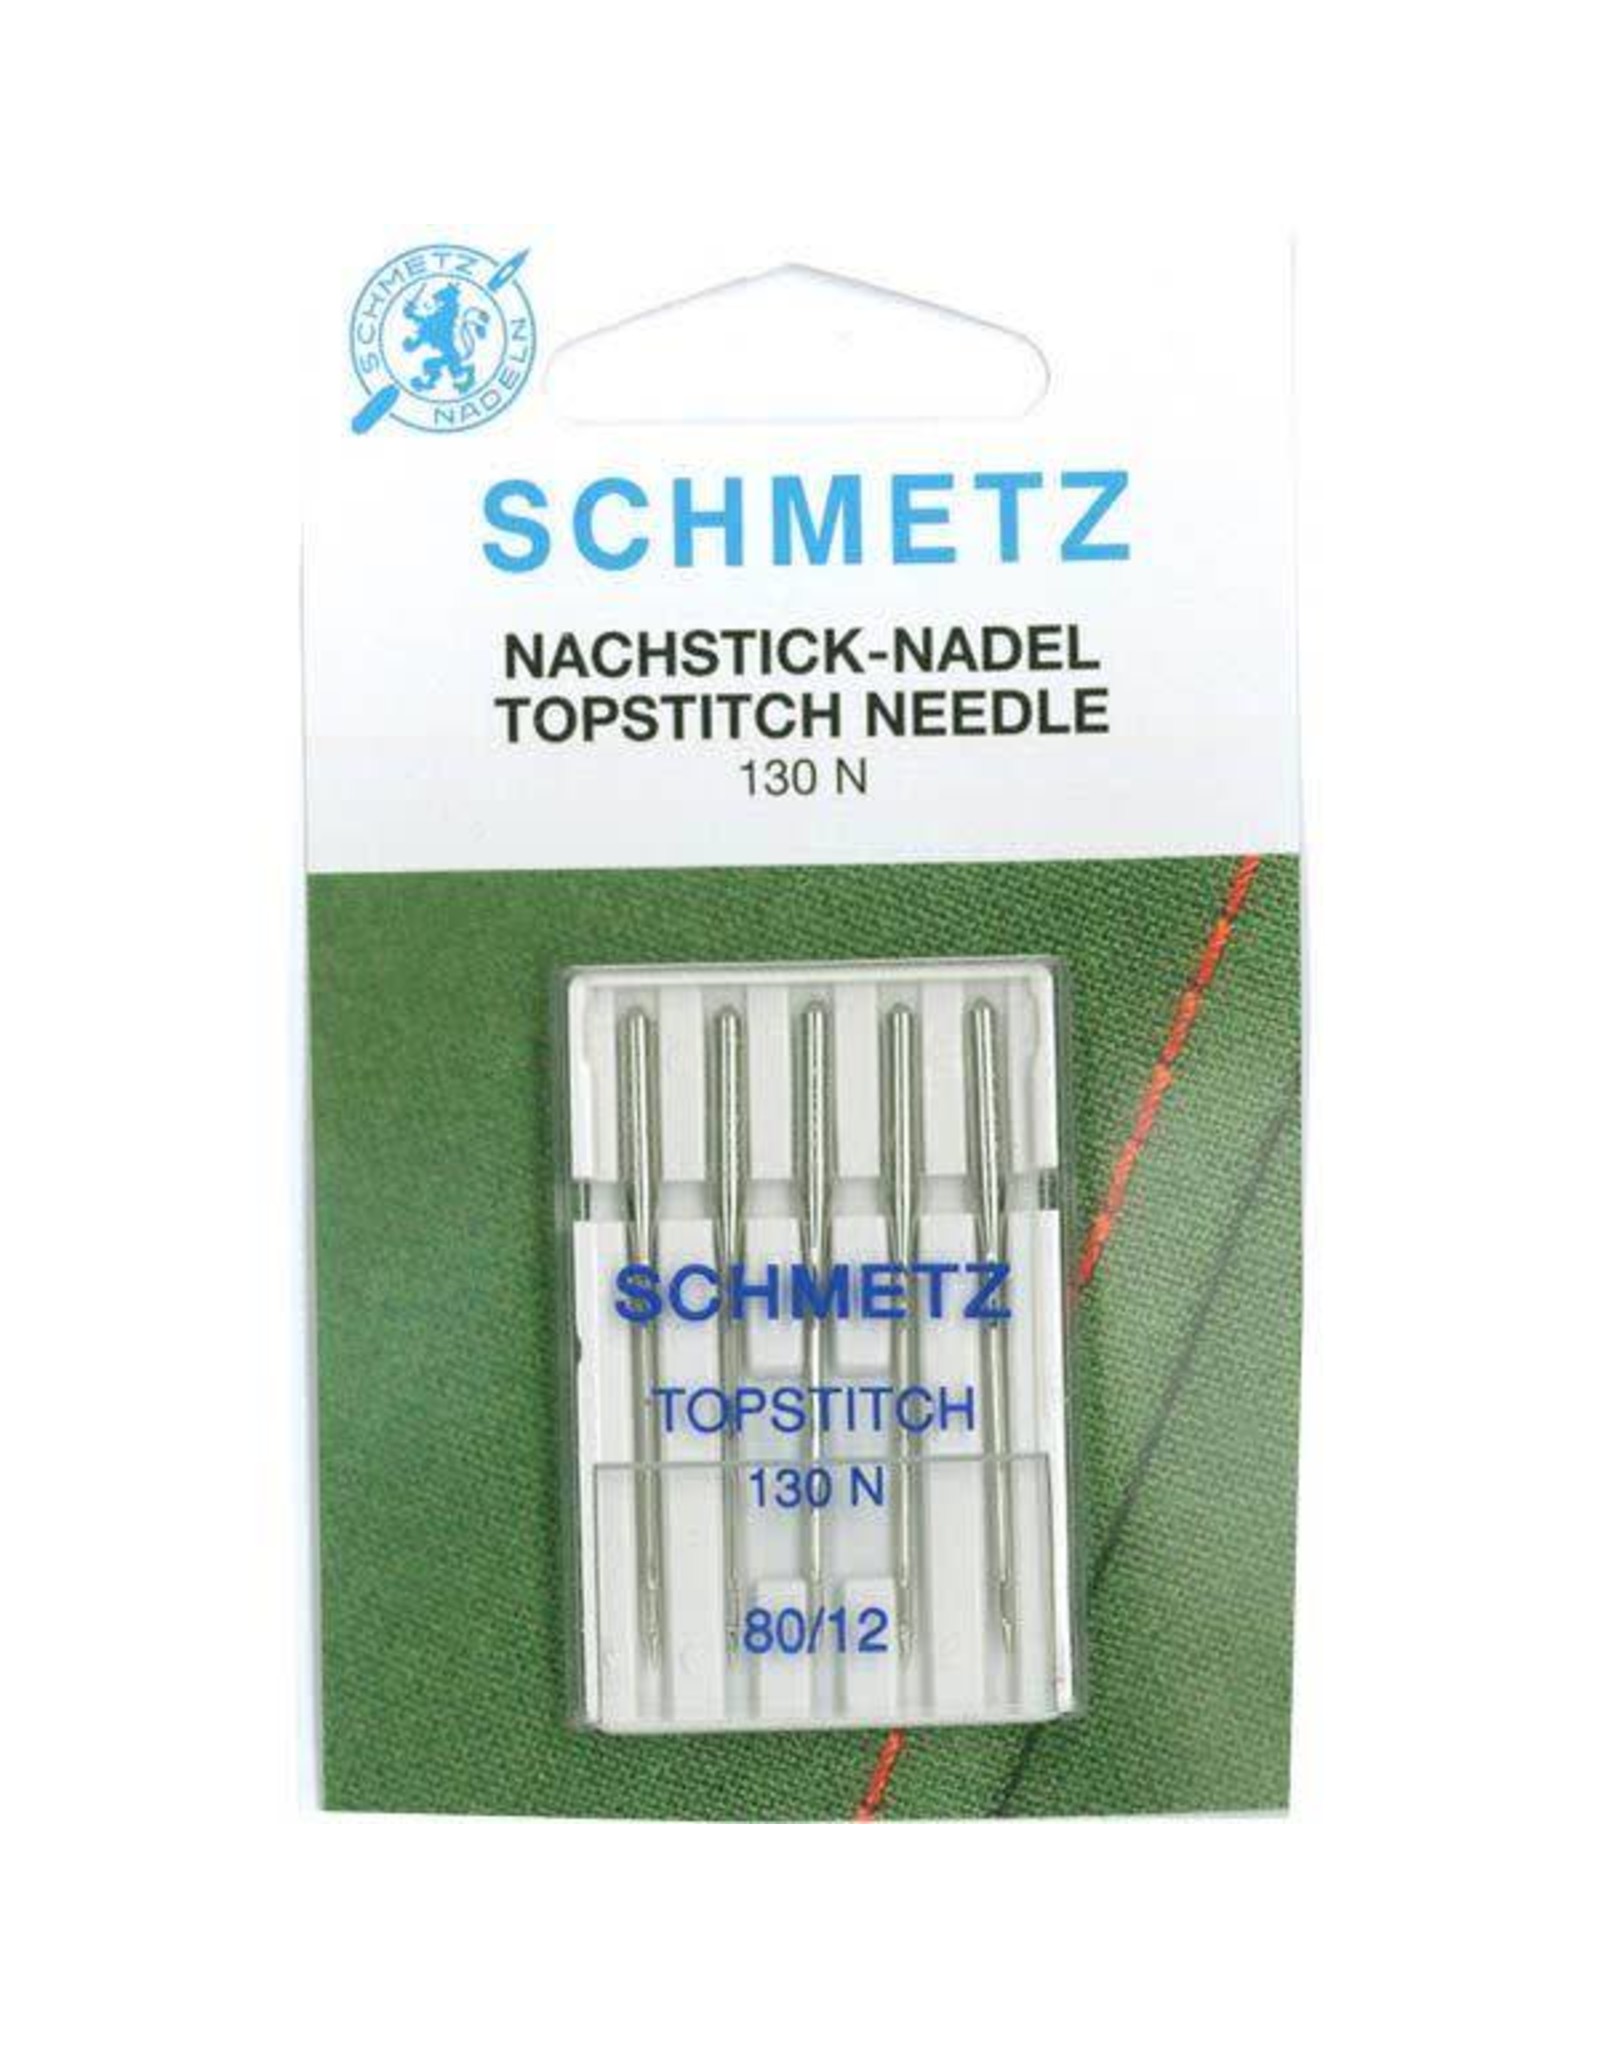 Schmetz Tipstitch Needle - 130N - 80